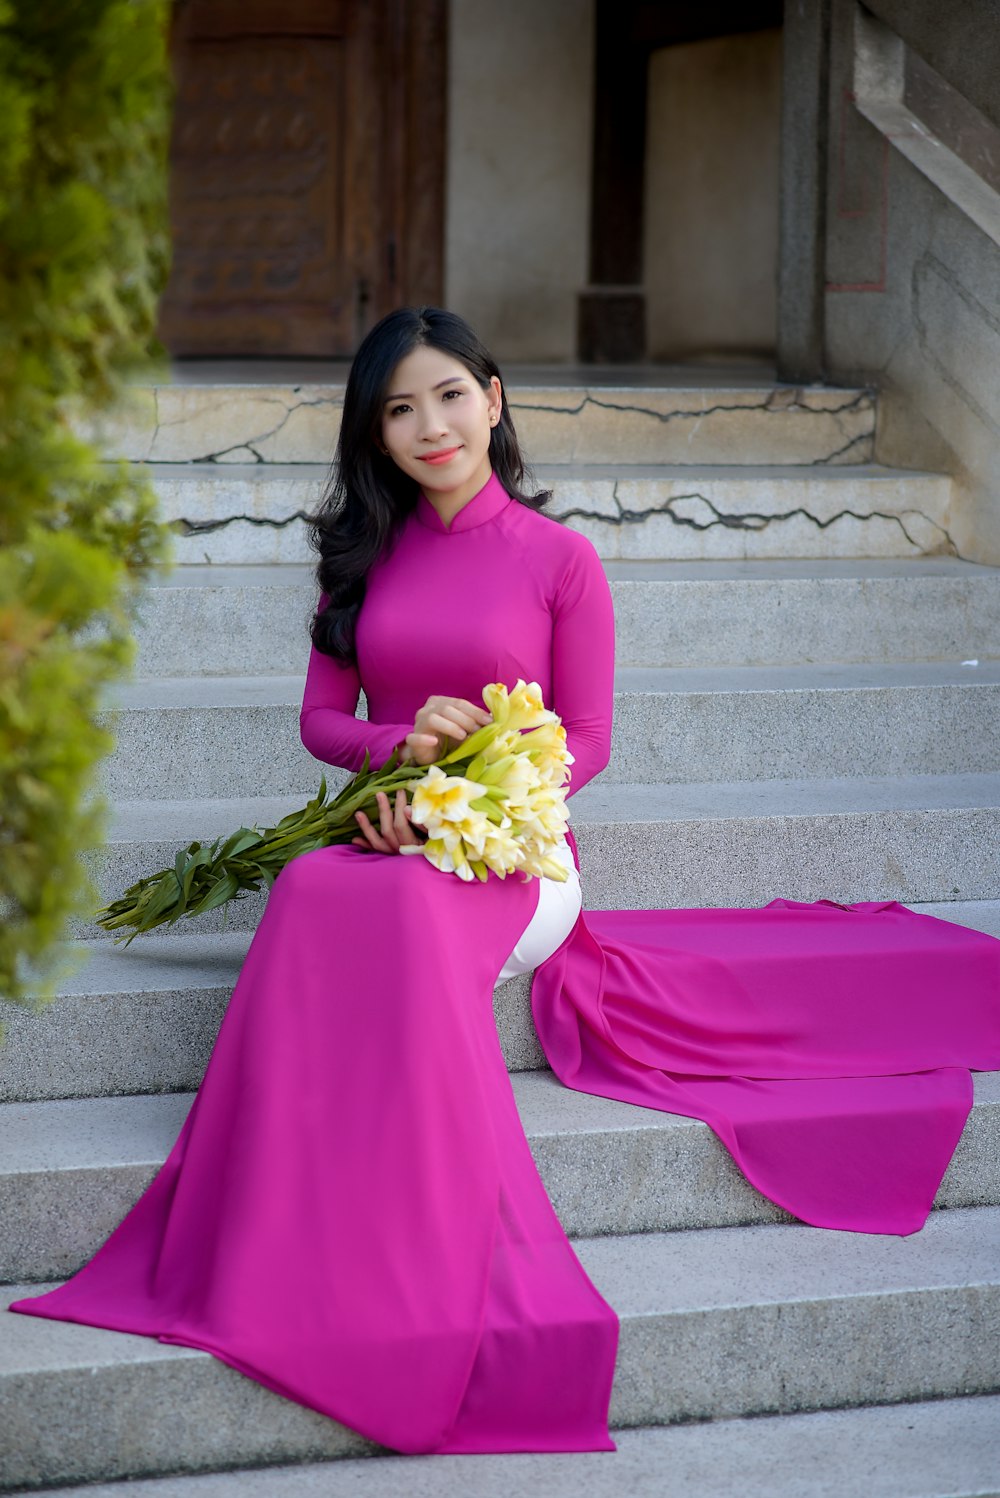 Frau in rosa langärmeligem Kleid mit Blumenstrauß